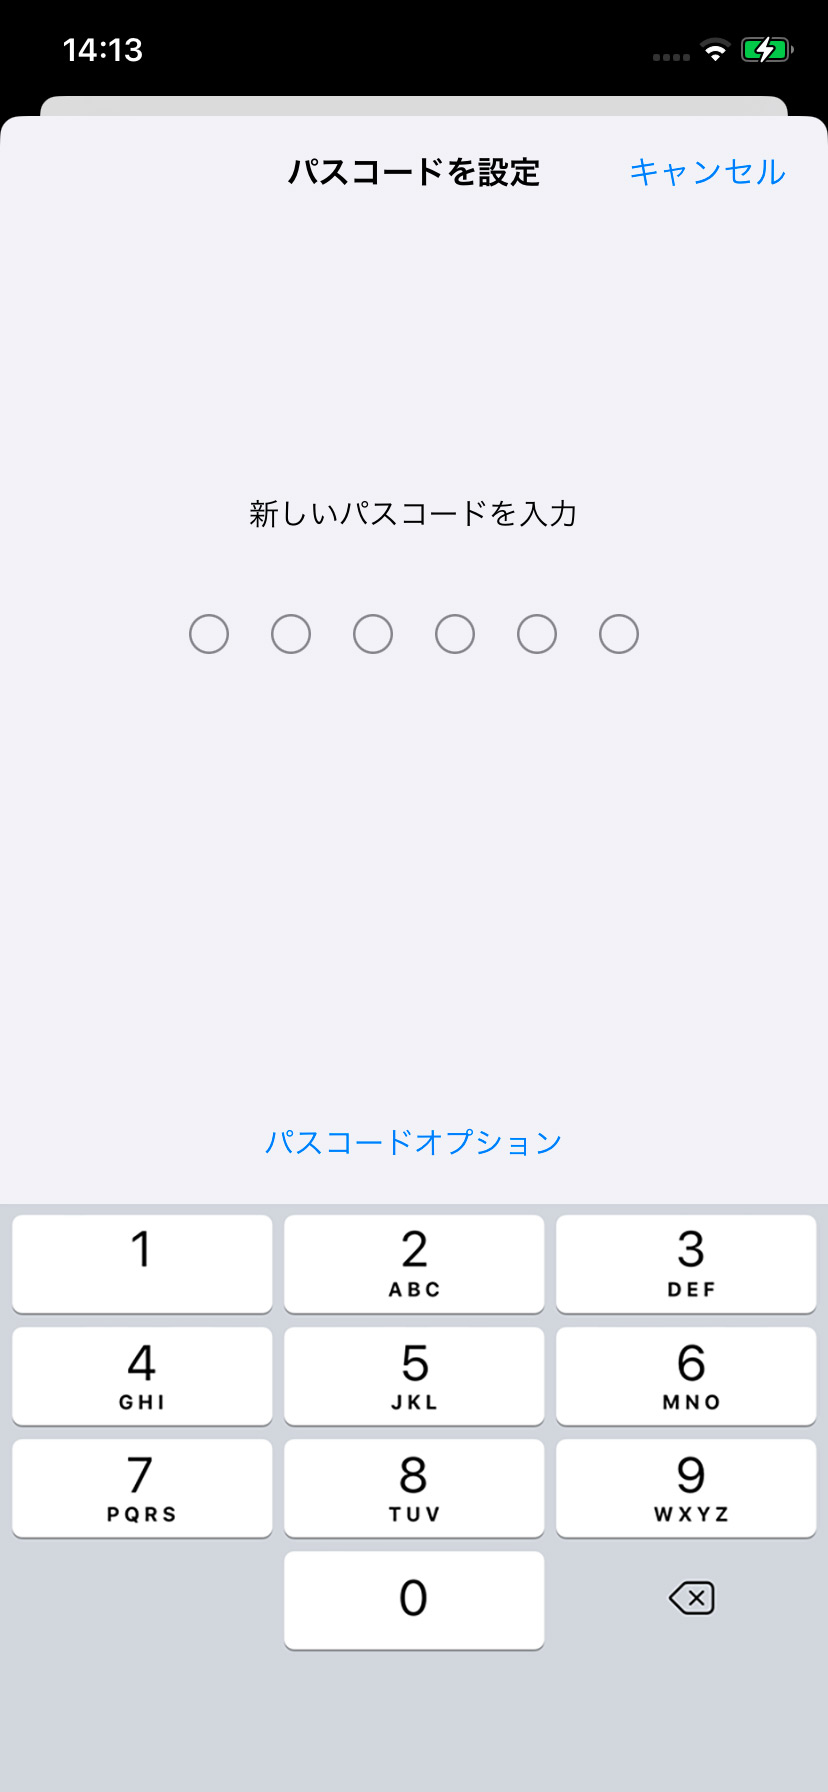 【iPhone】パスコードをオン(有効)にする